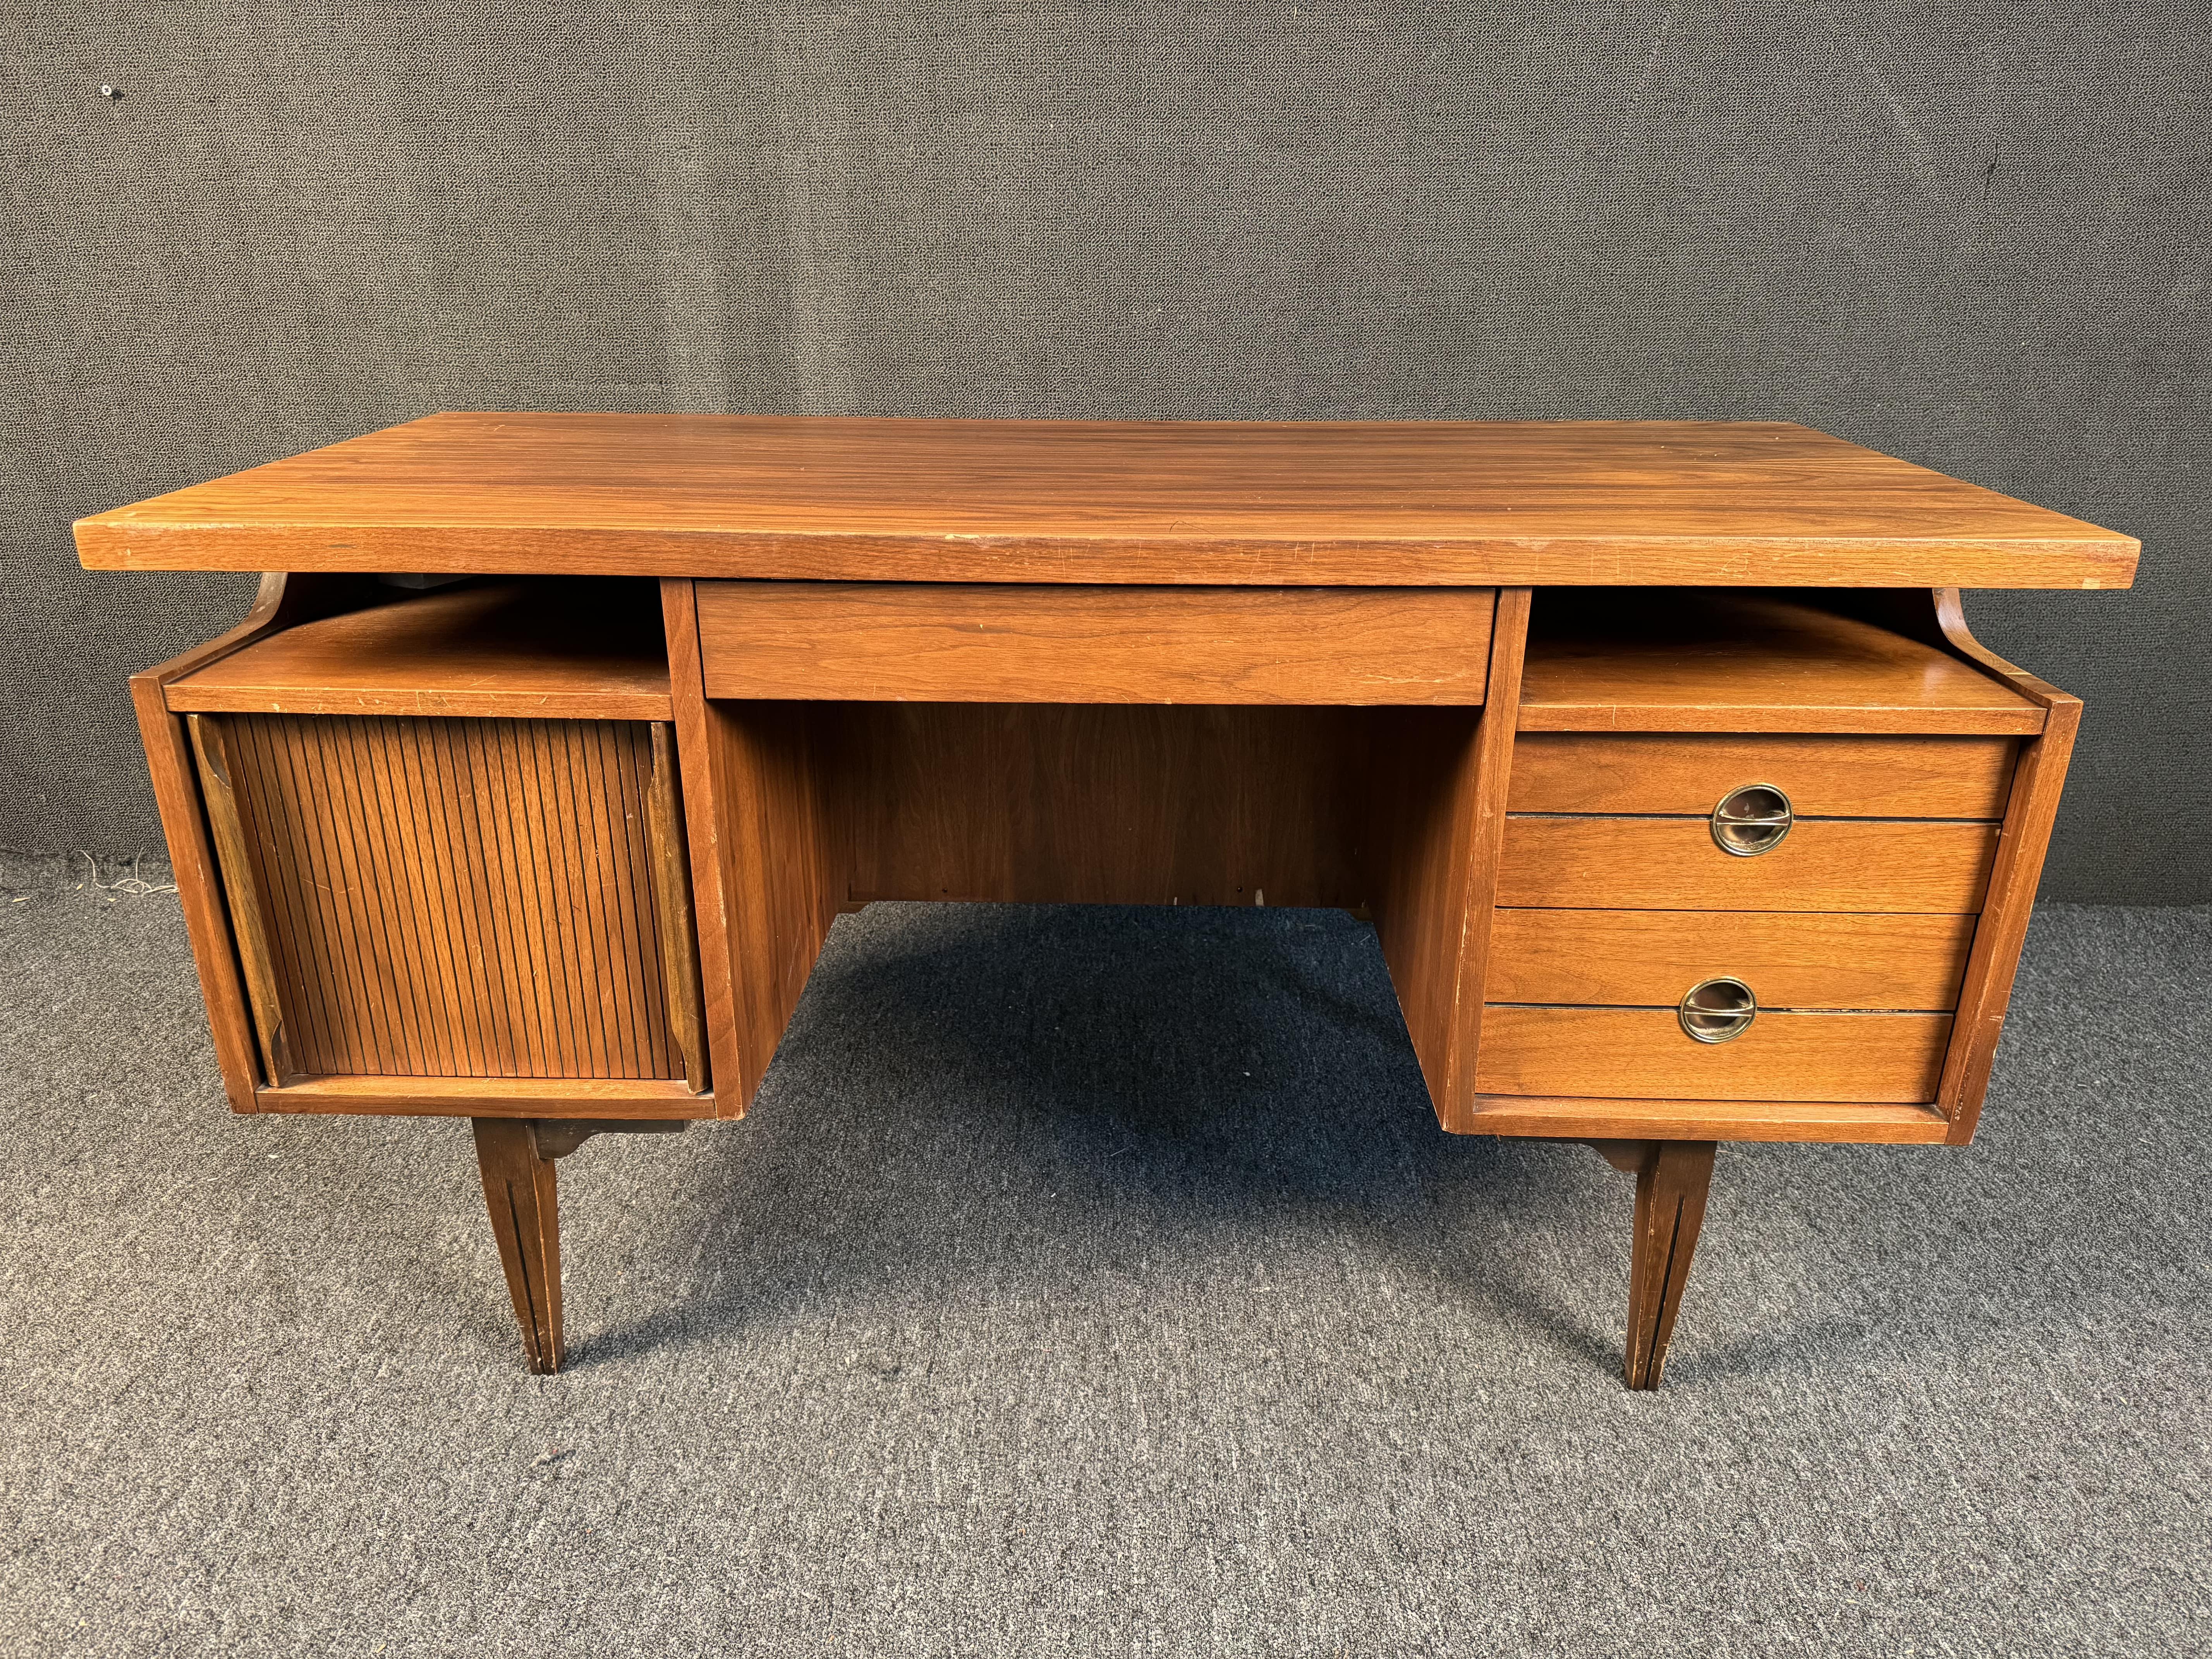 Schreibtisch aus amerikanischem Nussbaum von Hooker Furniture, ca. 1960er Jahre. Dieser Schreibtisch verfügt über eine 